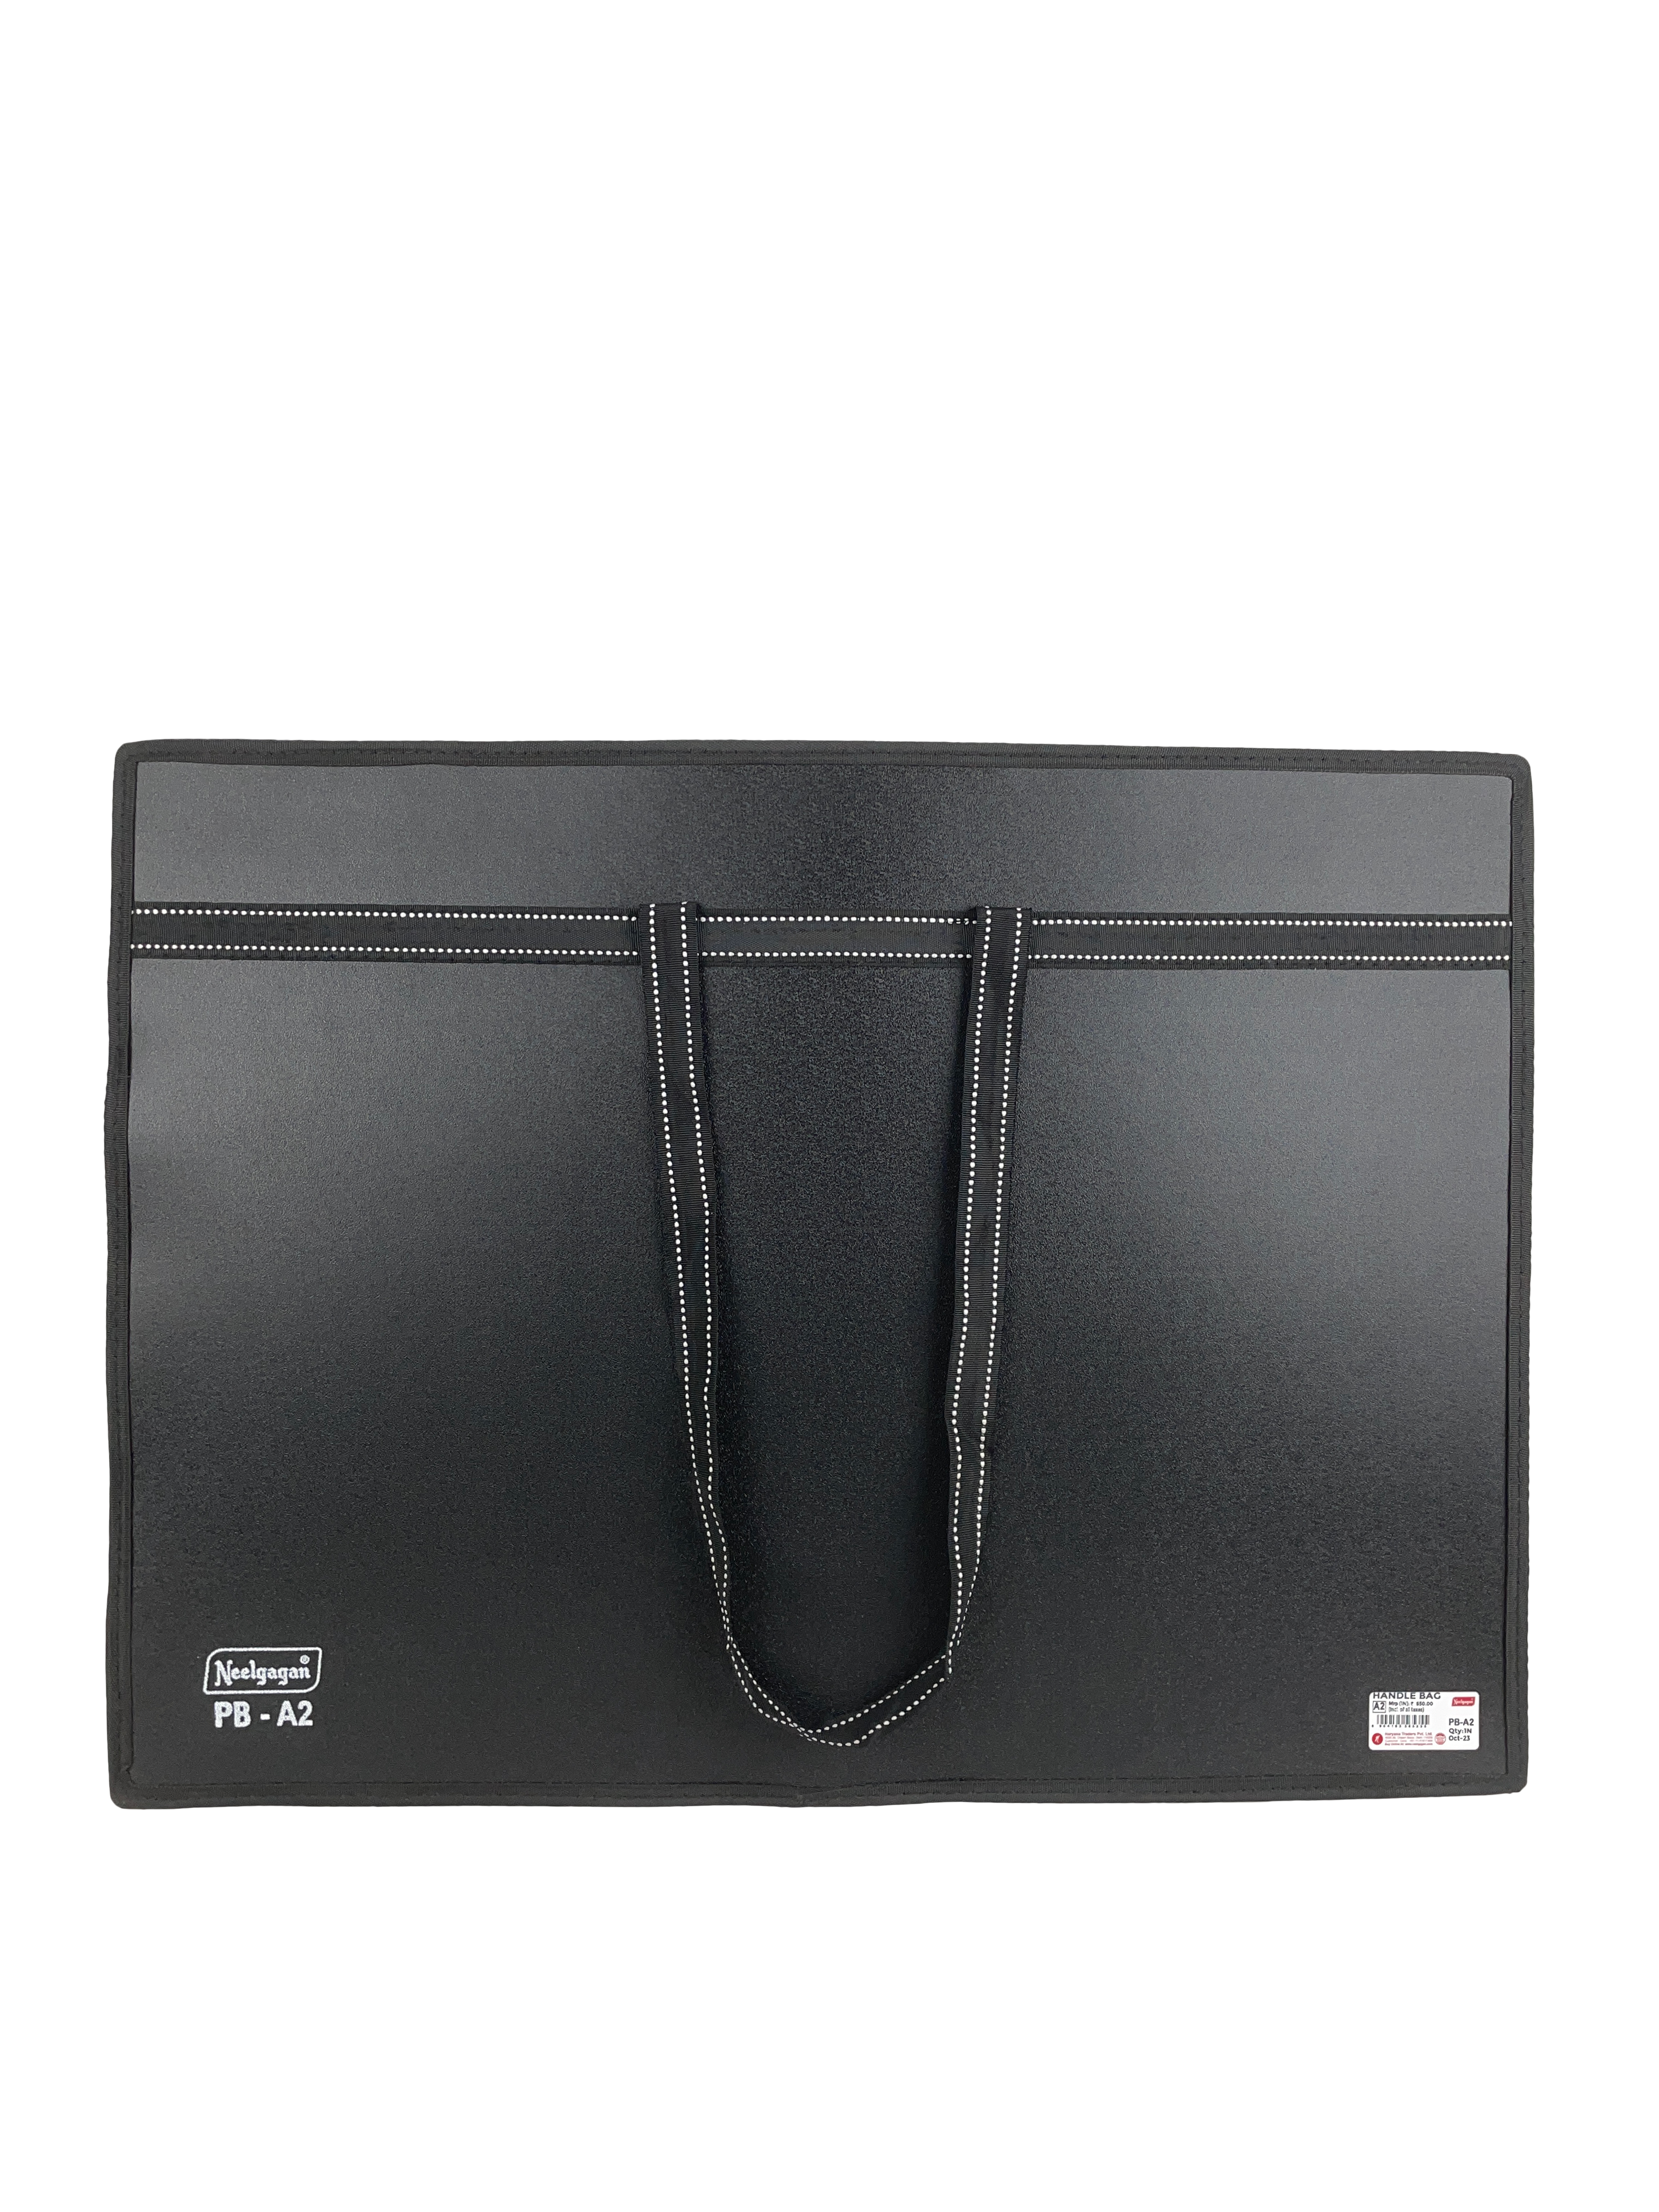 Portfolio Handle Bag A2 / A3 Size Black Color